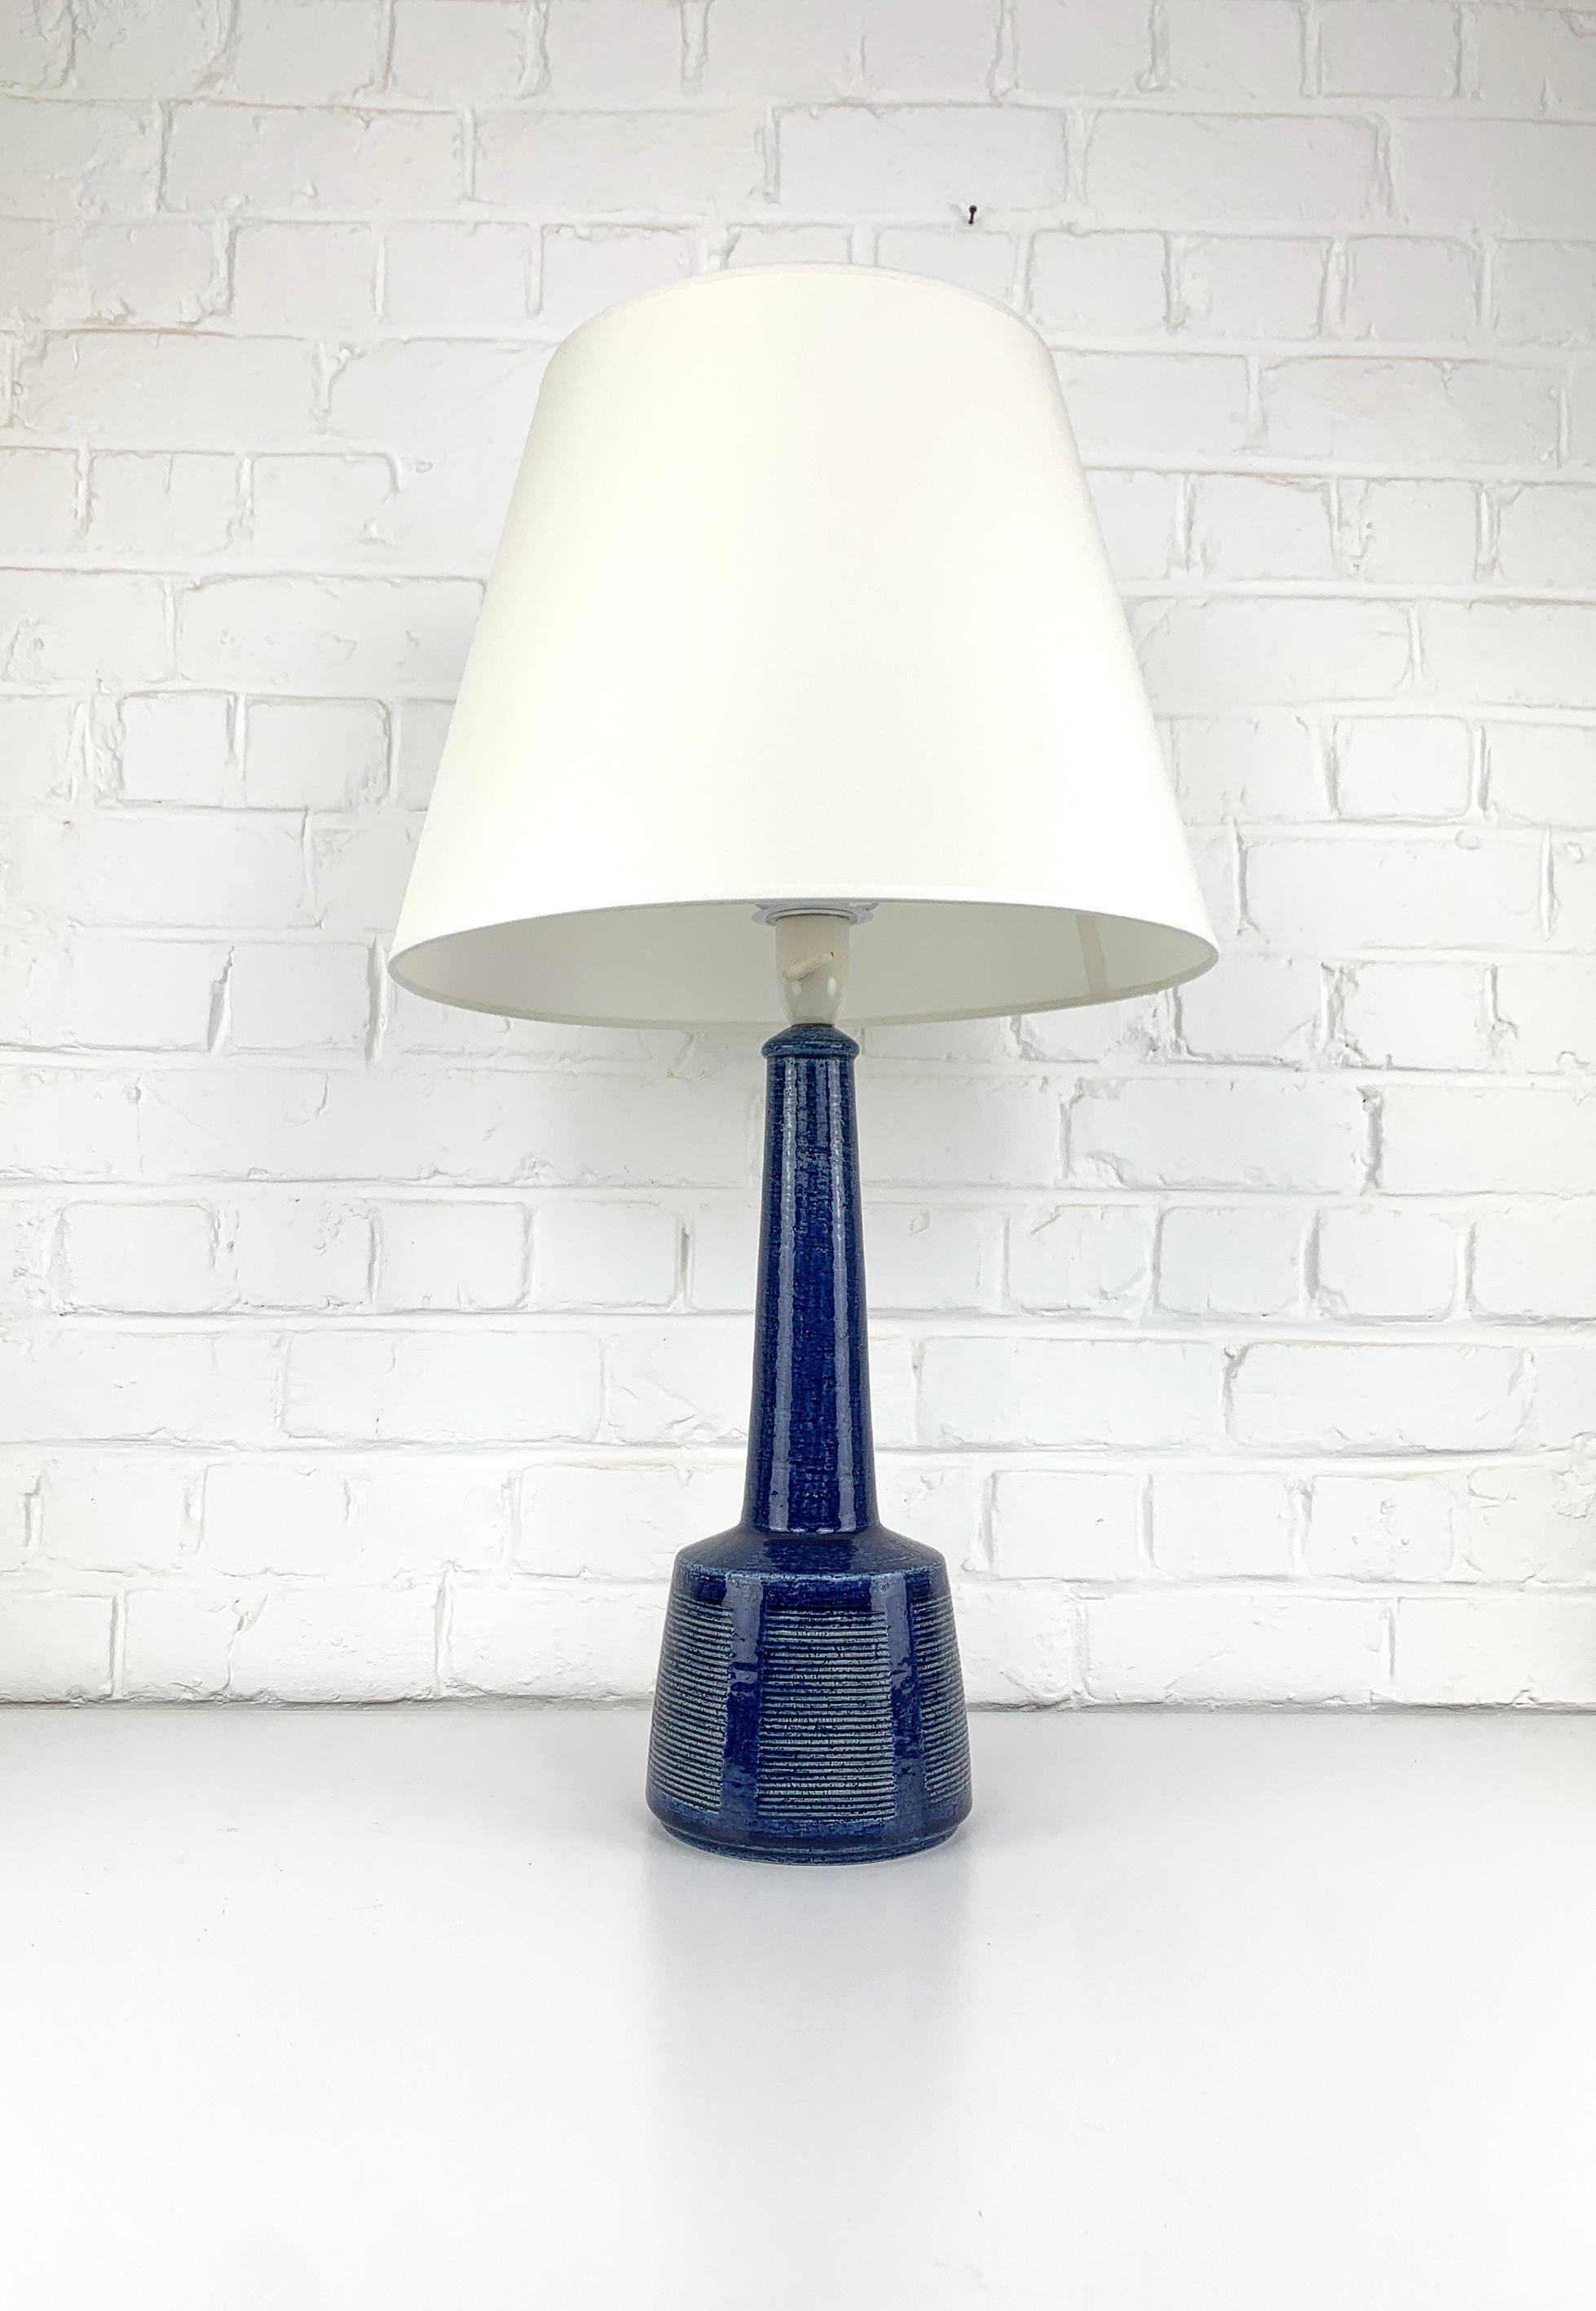 Glazed Tall Ceramic table lamp by Palshus, Denmark, design by Esben Klint for Le Klint